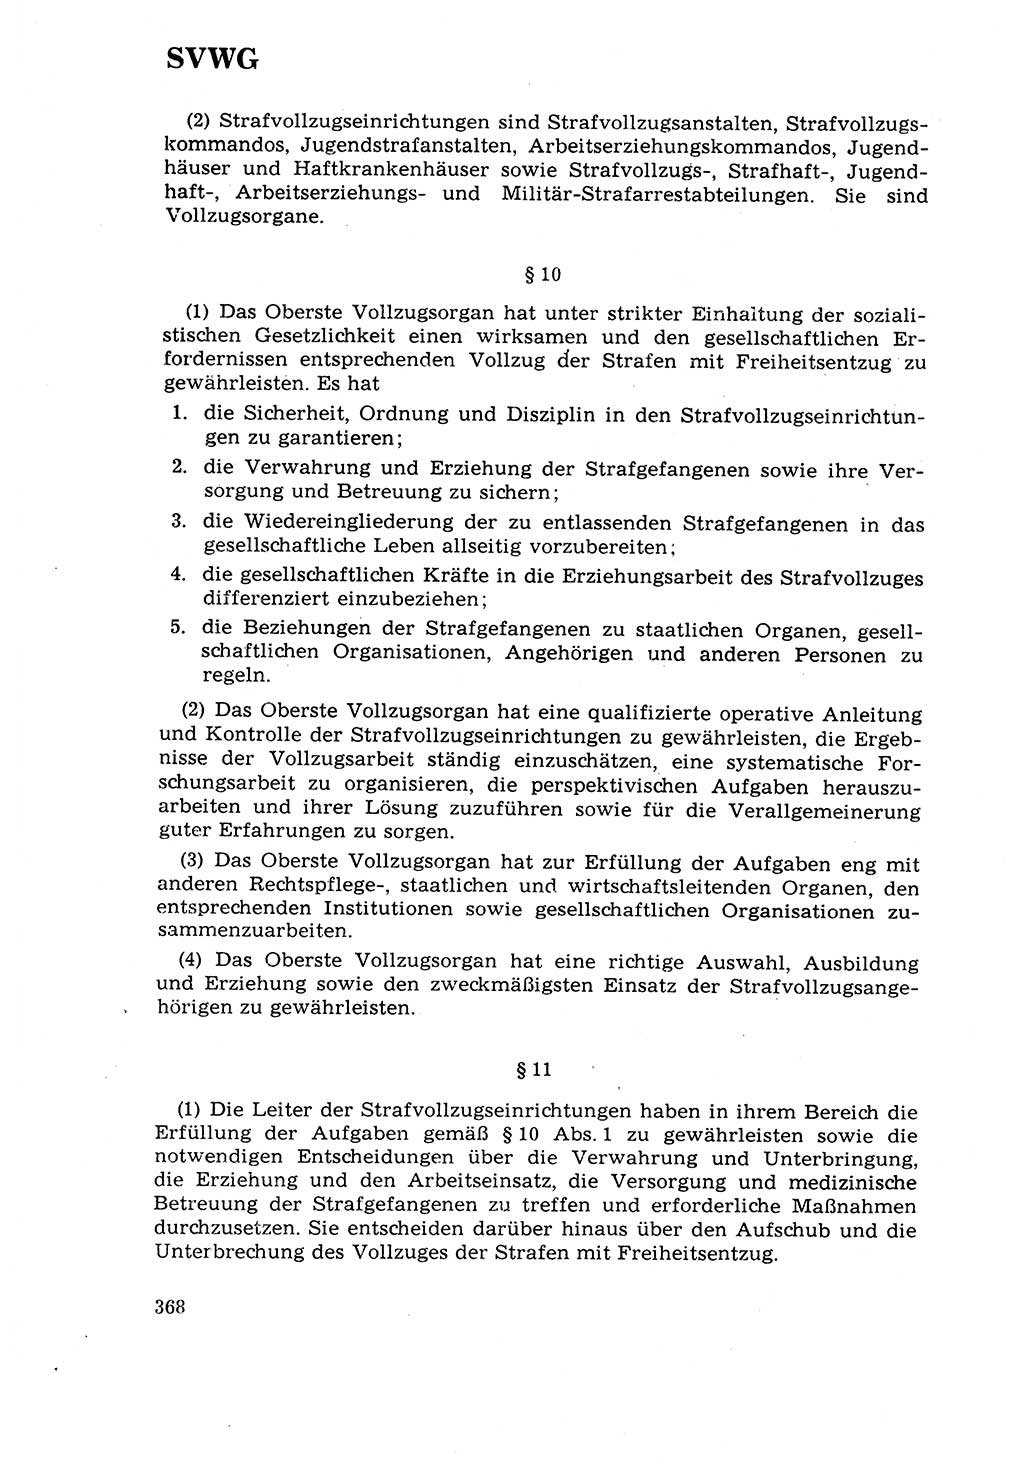 Strafrecht [Deutsche Demokratische Republik (DDR)] 1968, Seite 368 (Strafr. DDR 1968, S. 368)